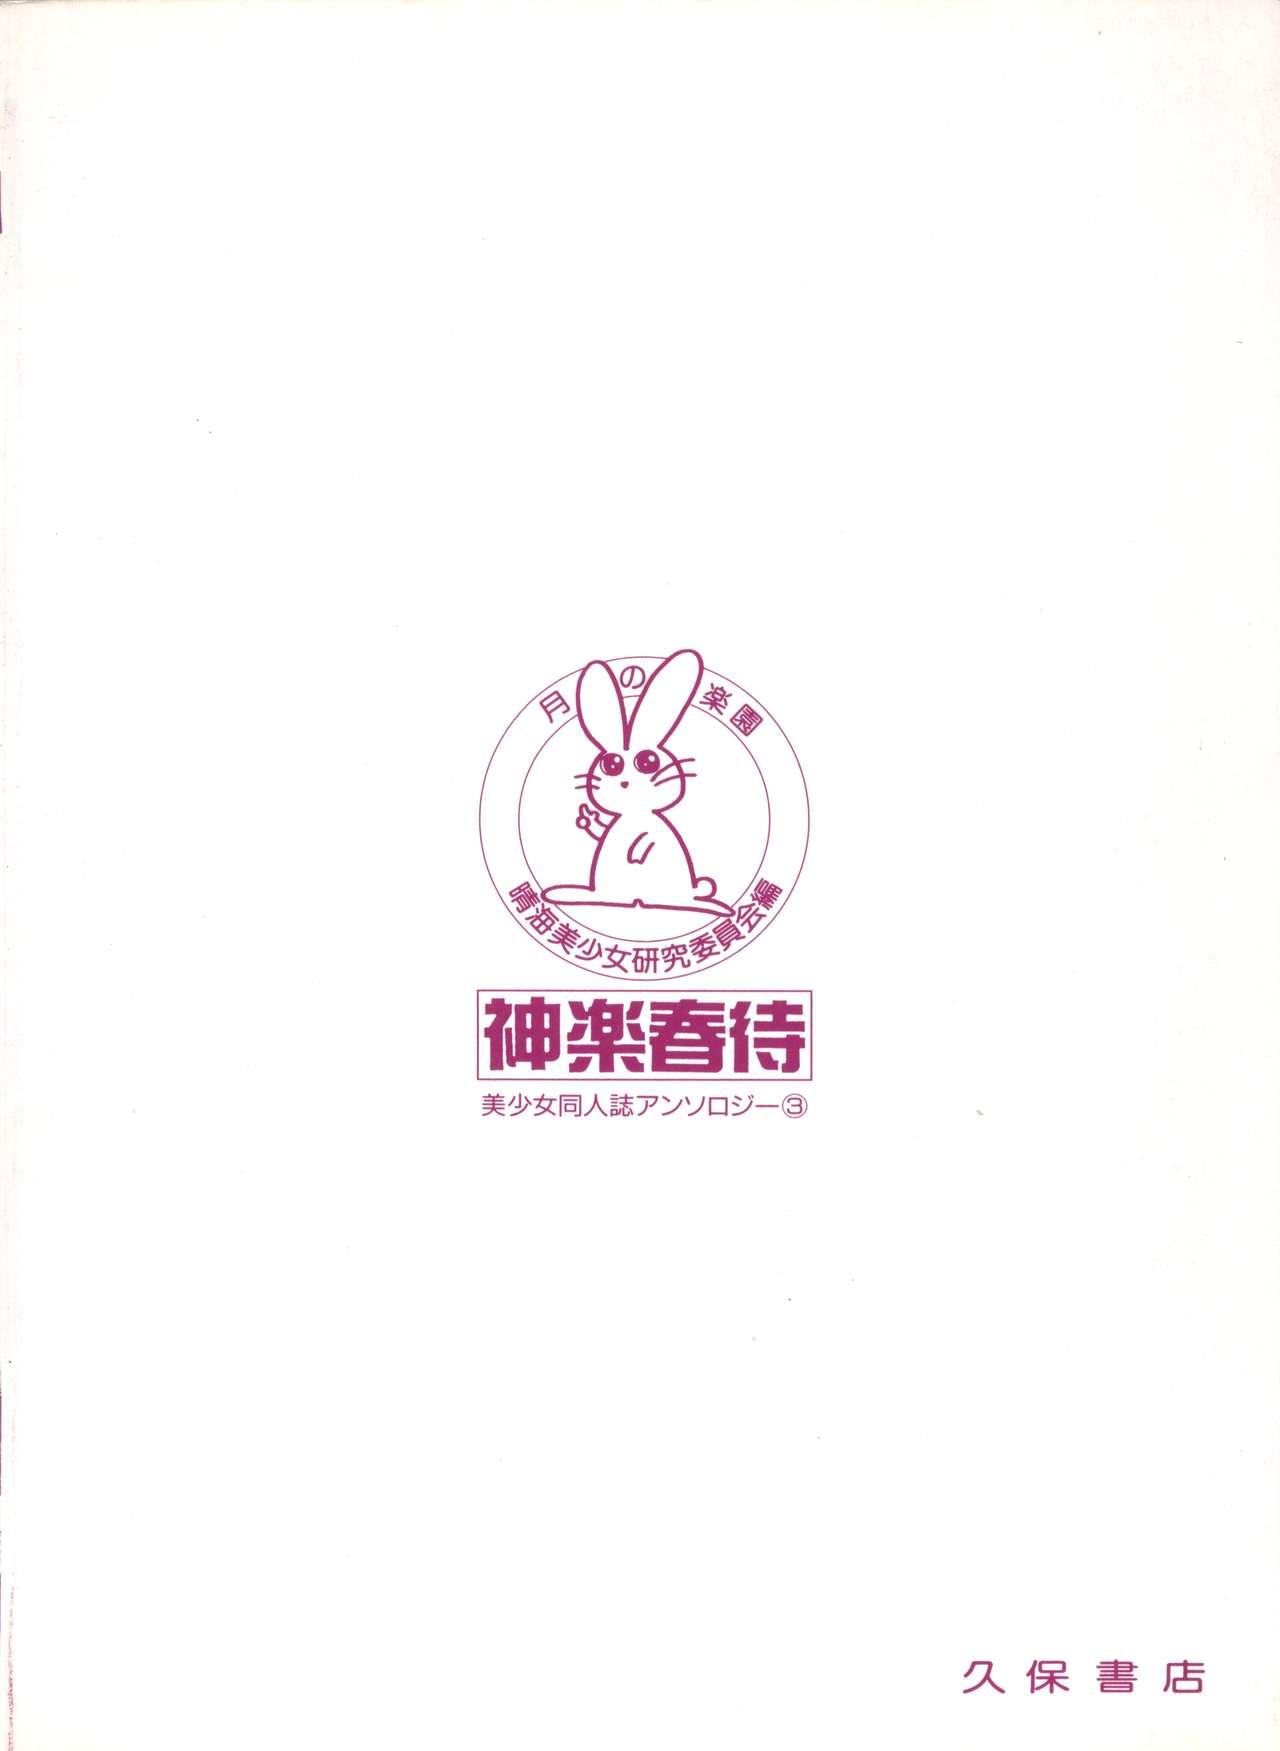 Bishoujo Doujinshi Anthology 3 - Moon Paradise 2 Tsuki no Rakuen 150